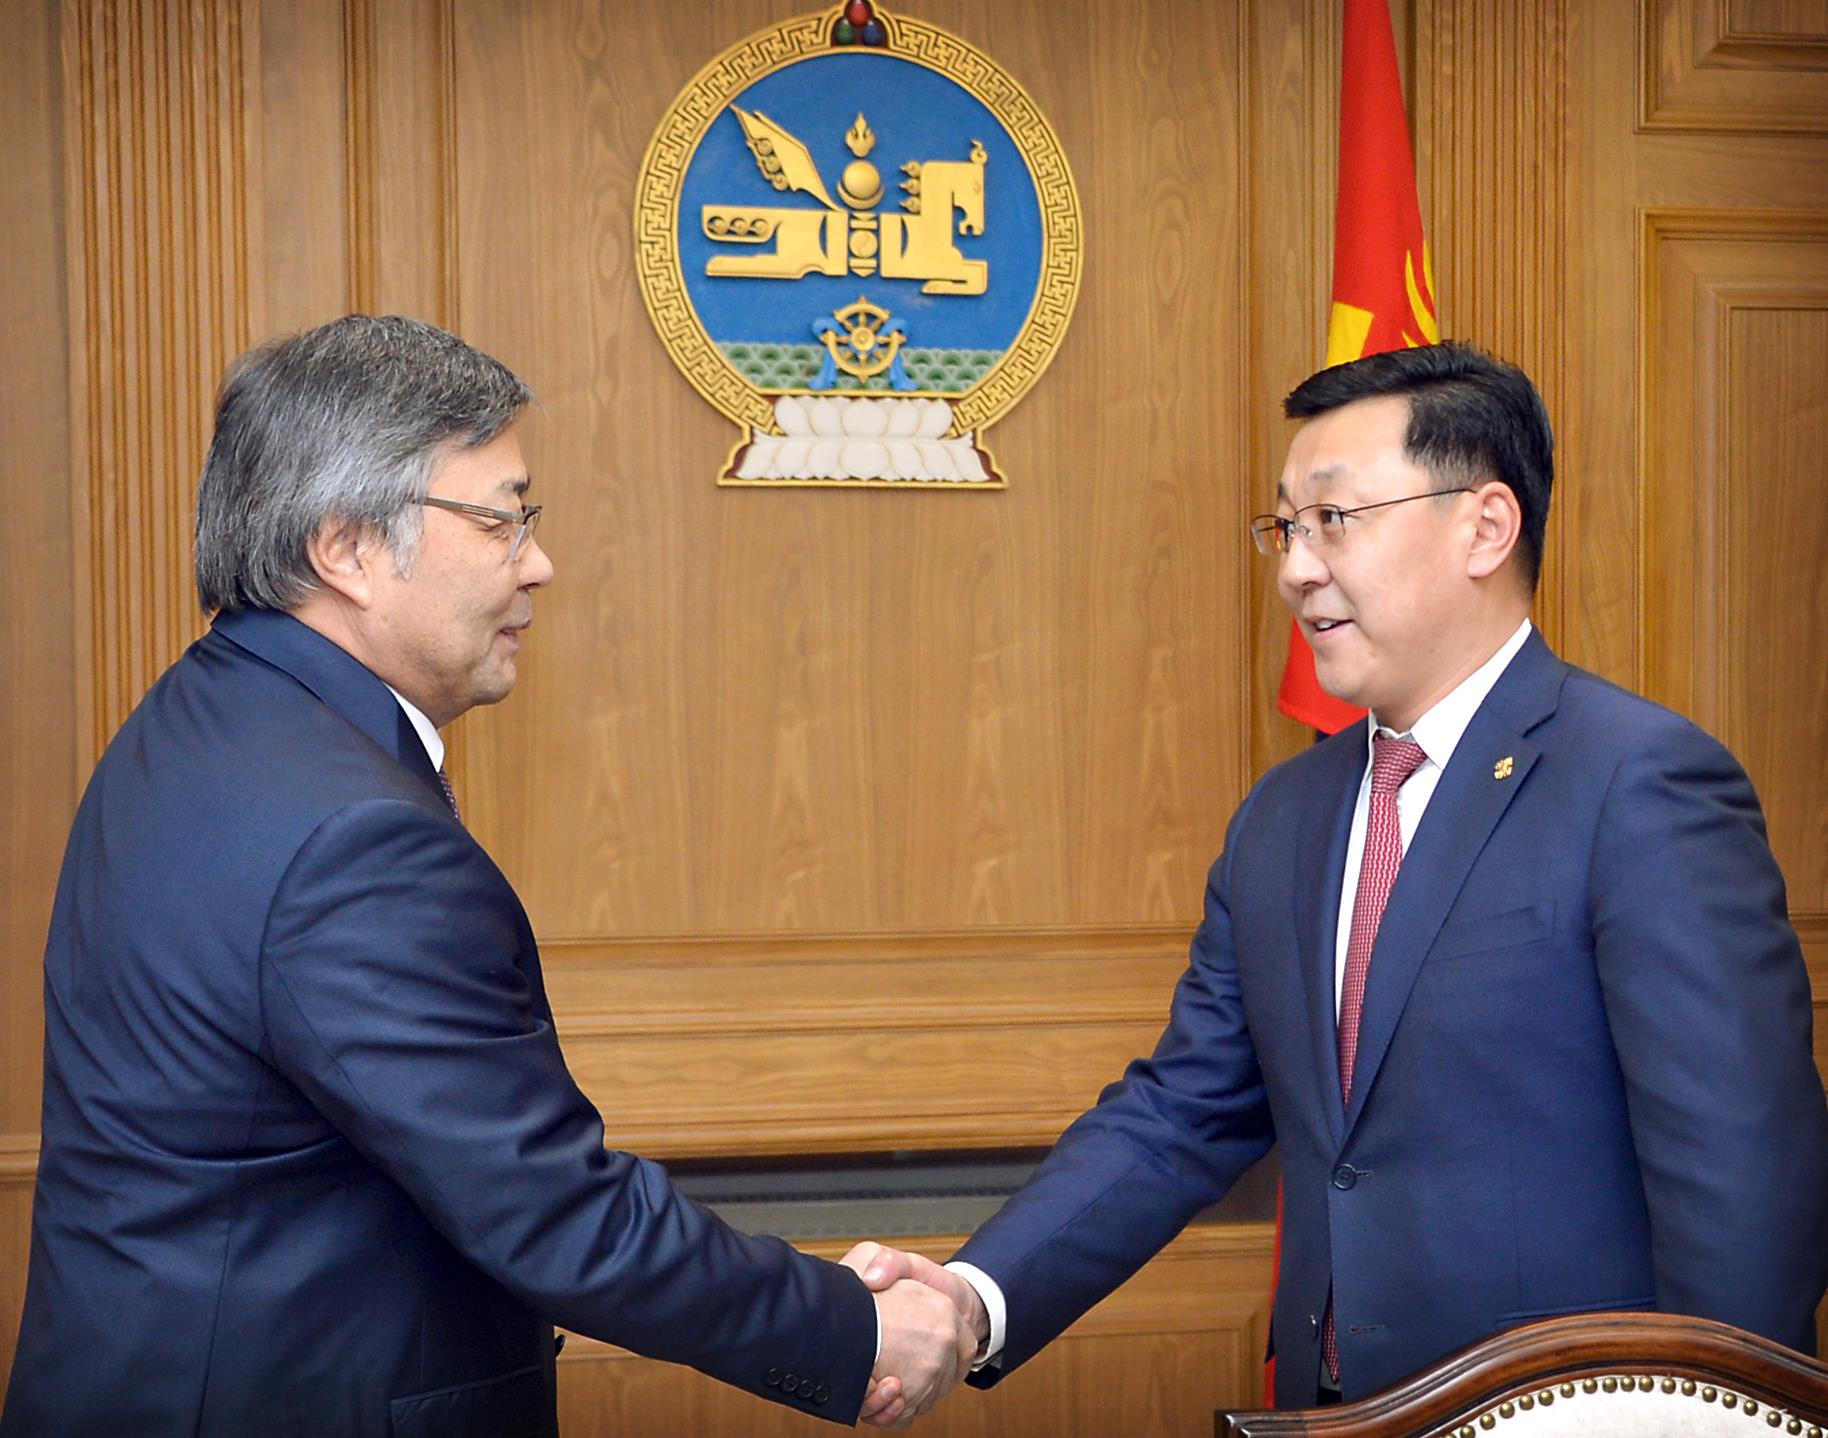 Ерөнхий сайд Ж.Эрдэнэбат Казахстан улсын Элчин сайдыг хүлээн авч уулзлаа